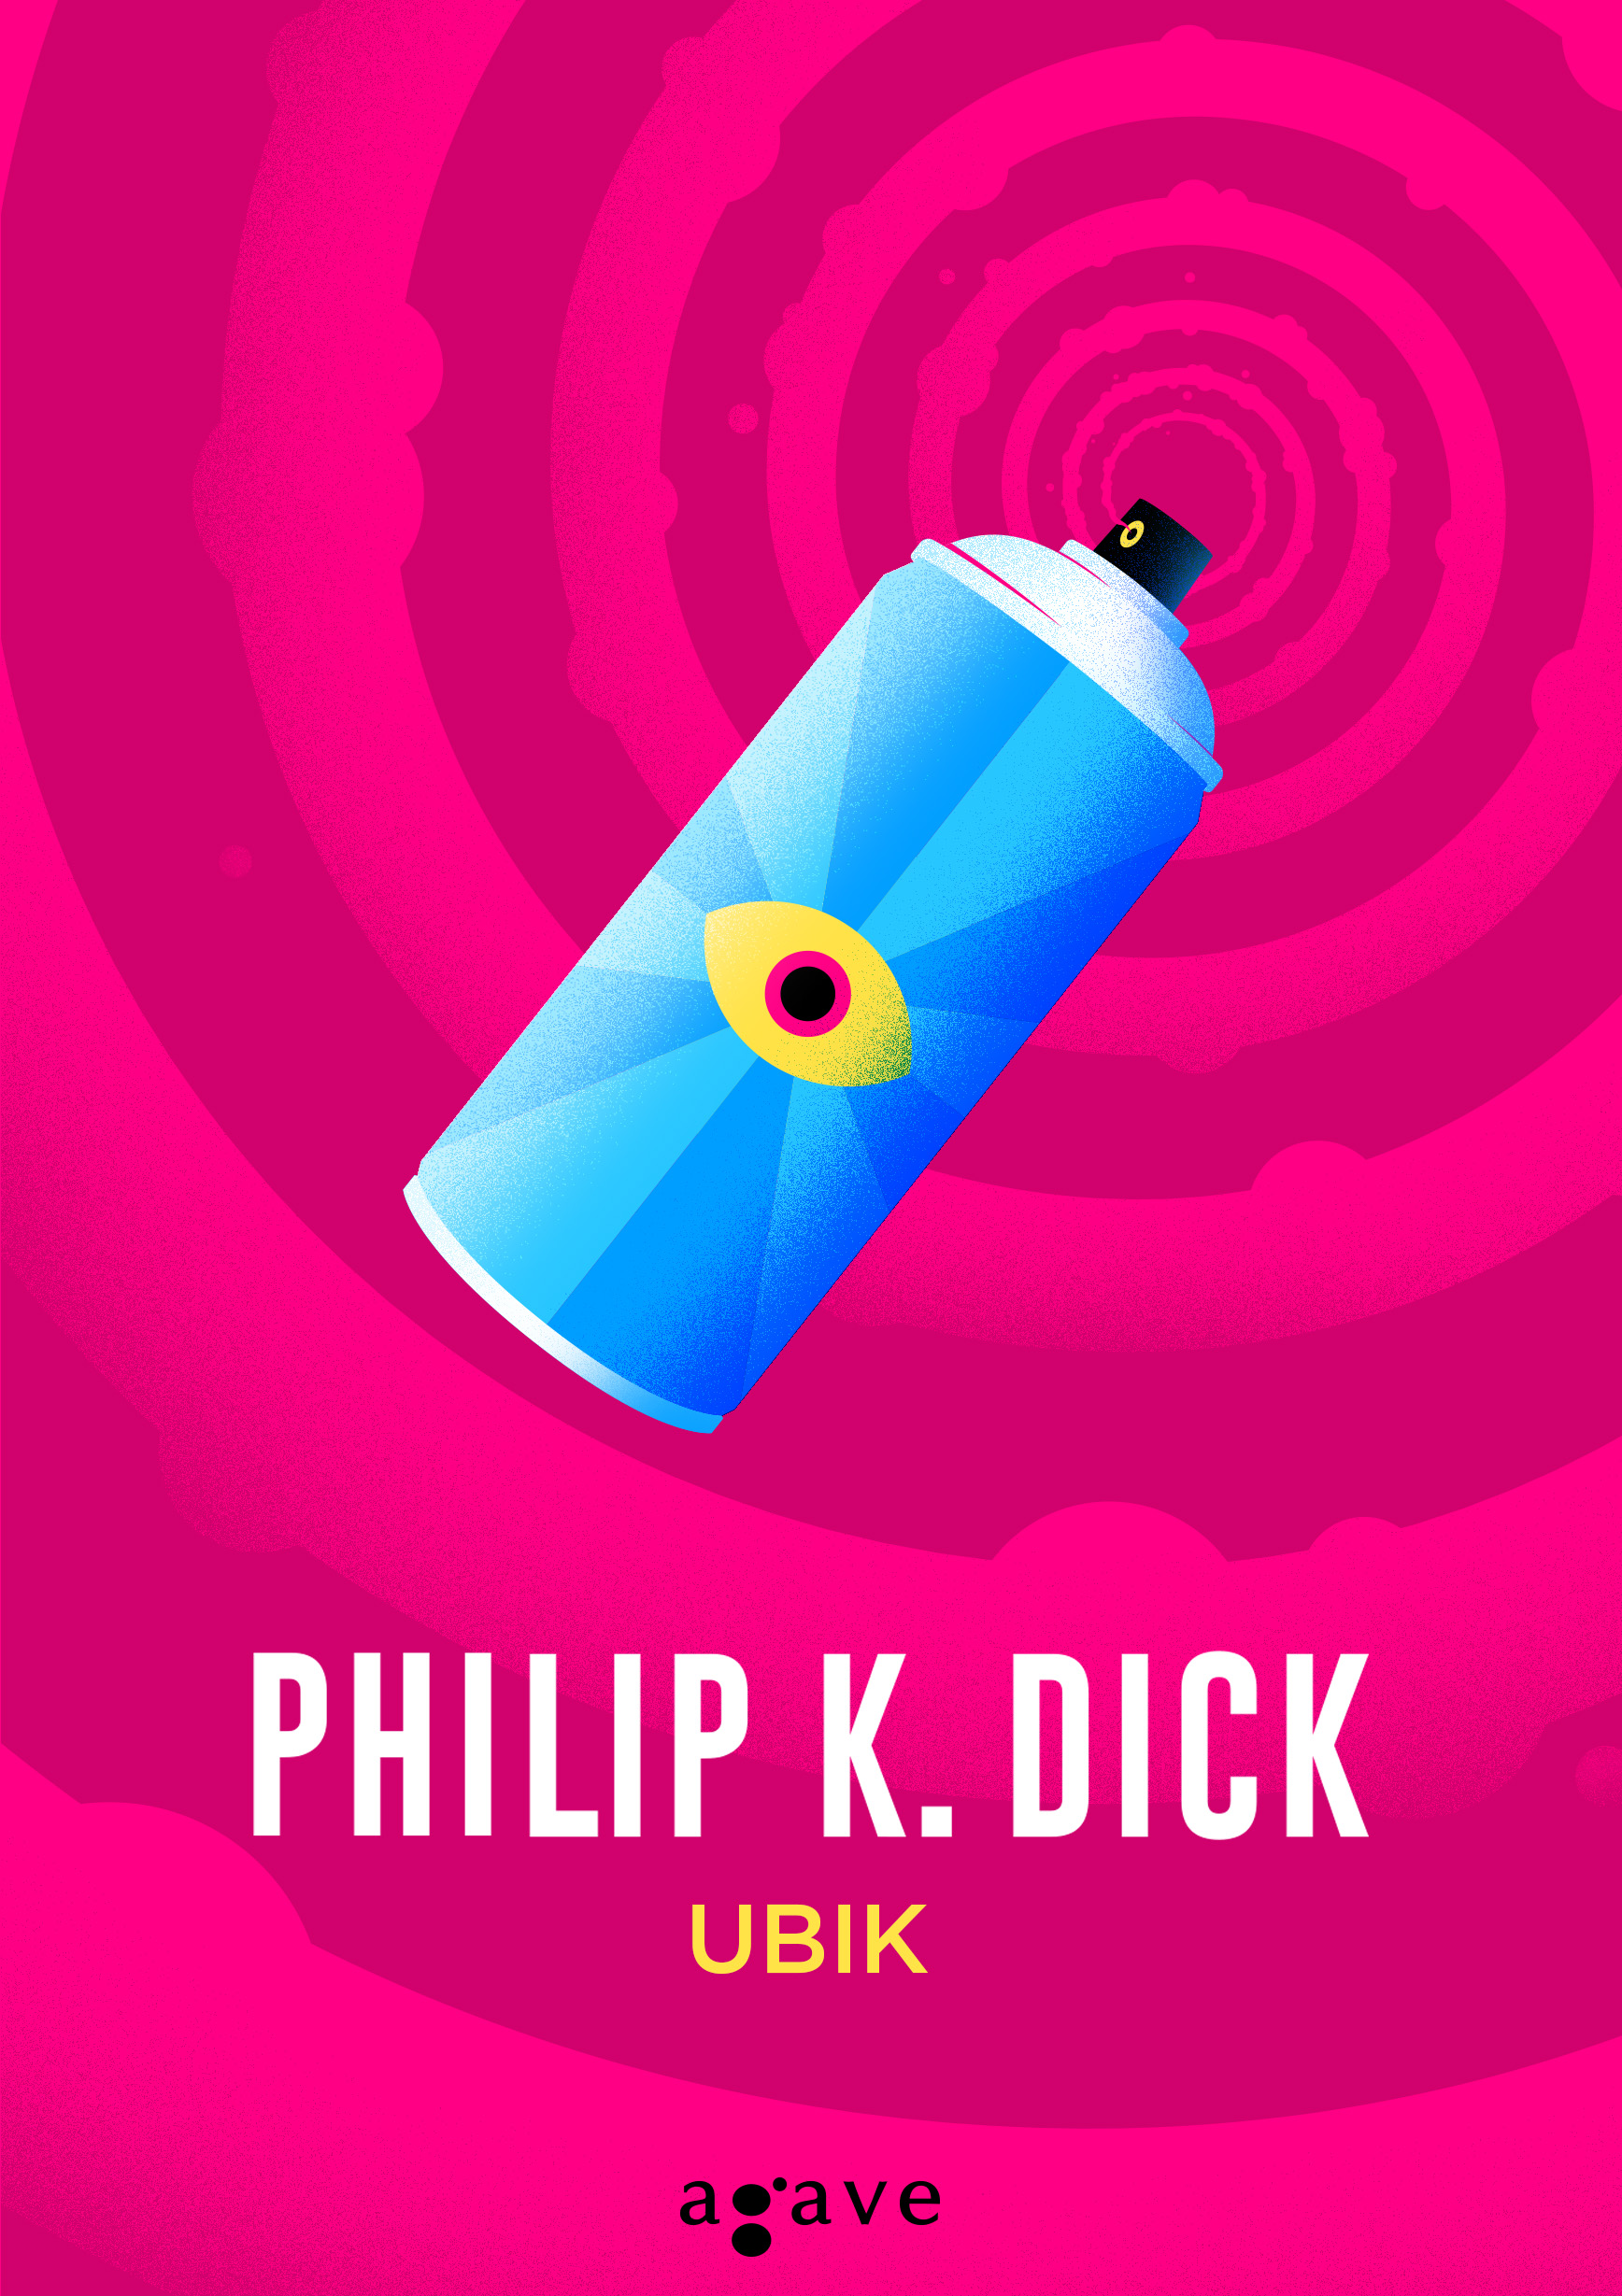 philip_k_dick_ubik_b1_2020.jpg